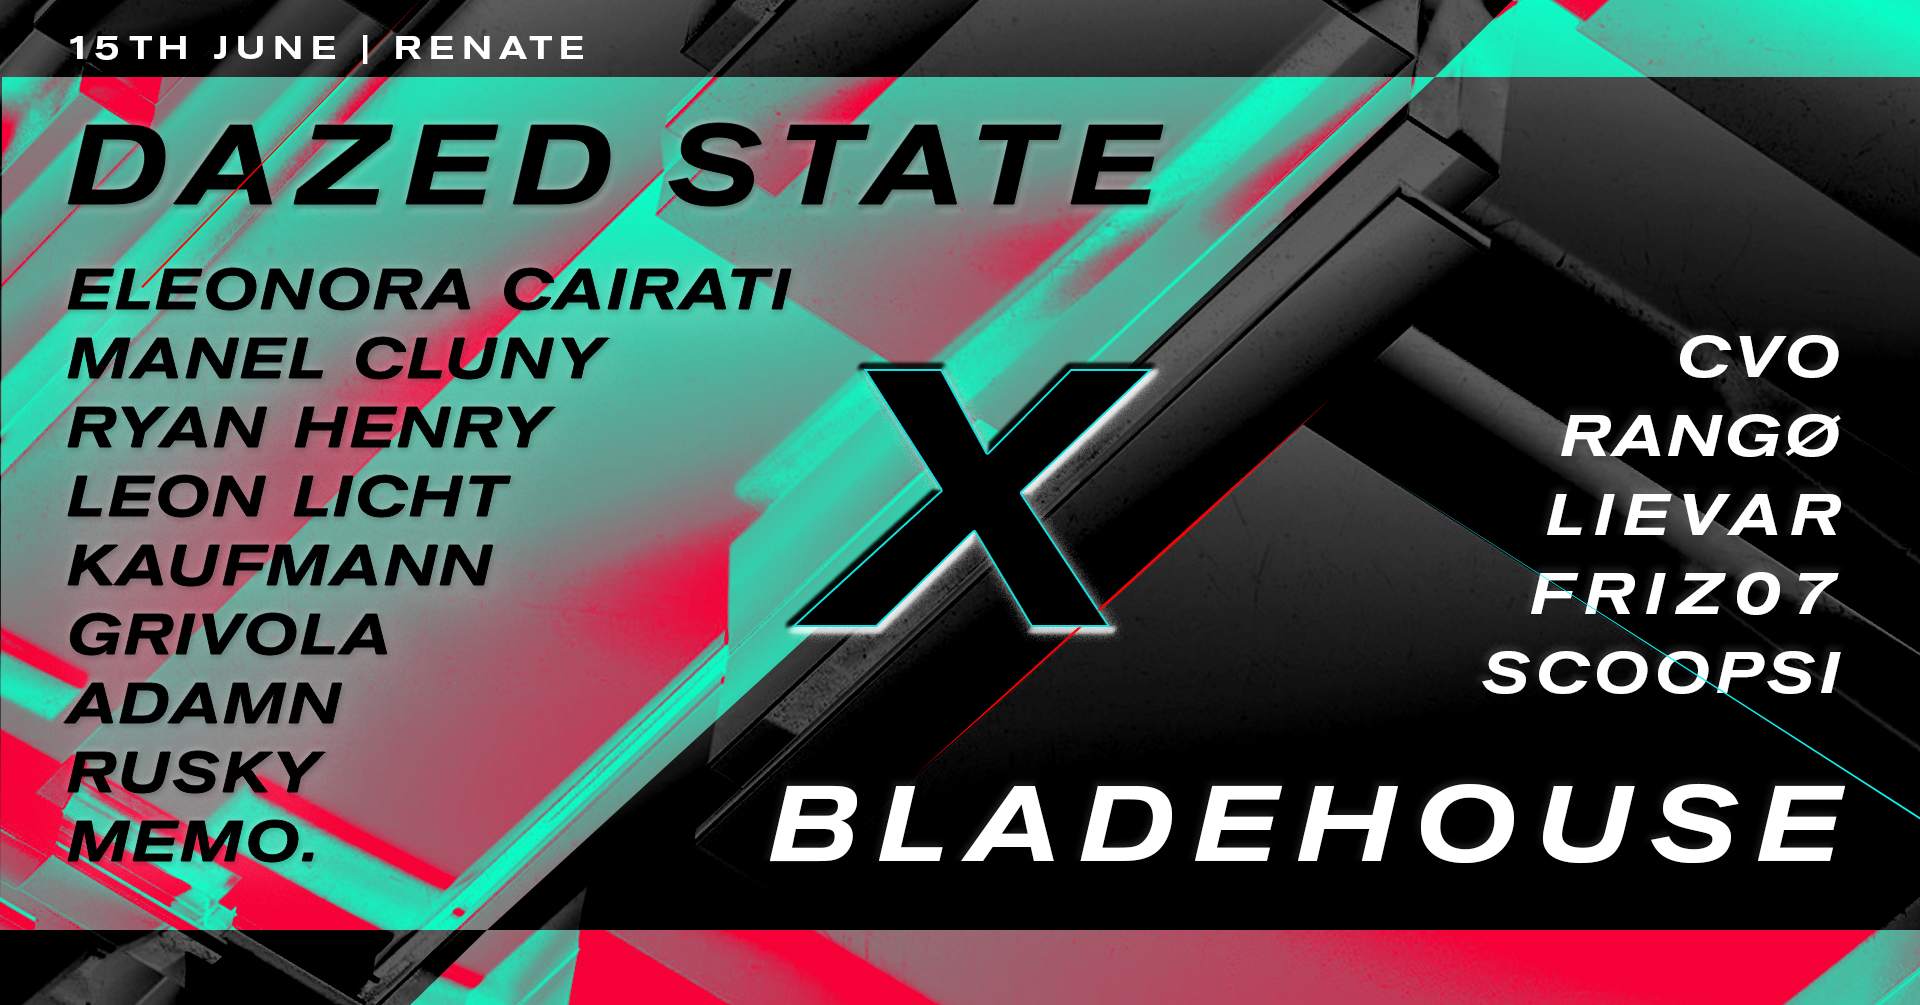 Dazed State X Bladehouse - Página frontal